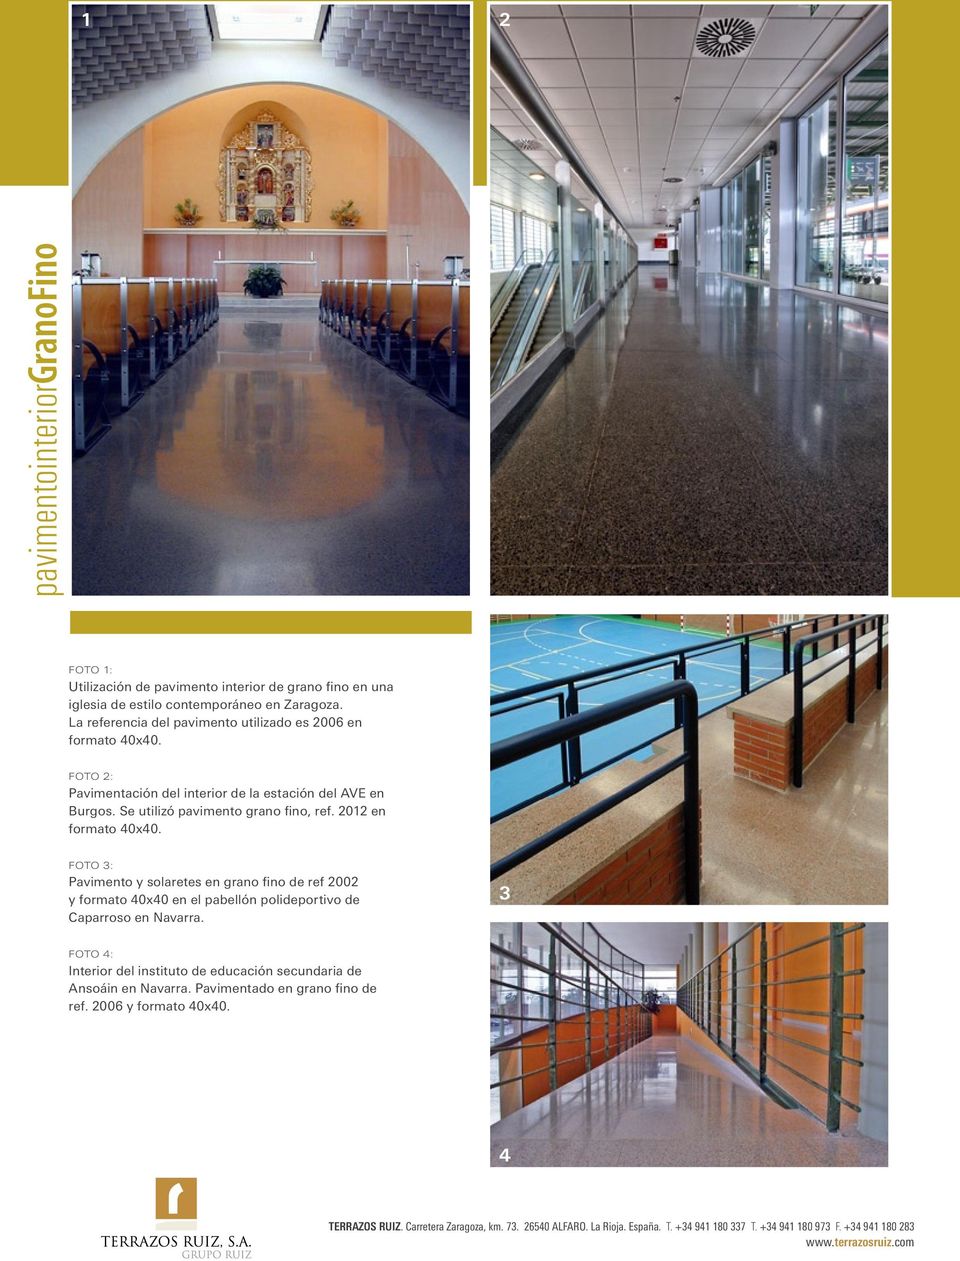 2012 en formato 40x40. FOTO 3: Pavimento y solaretes en grano fino de ref 2002 y formato 40x40 en el pabellón polideportivo de Caparroso en Navarra.